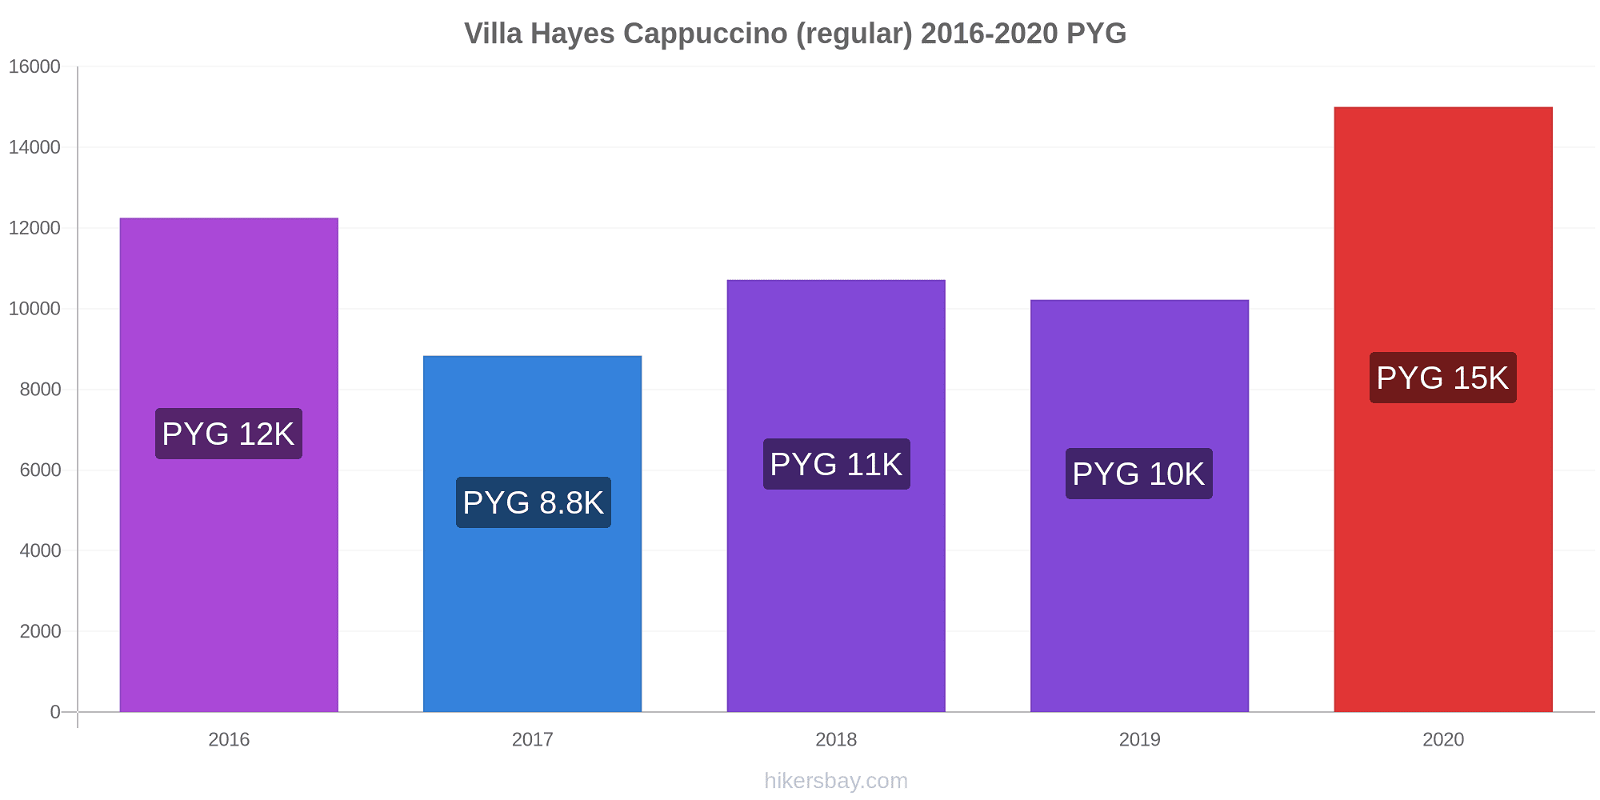 Villa Hayes price changes Cappuccino (regular) hikersbay.com